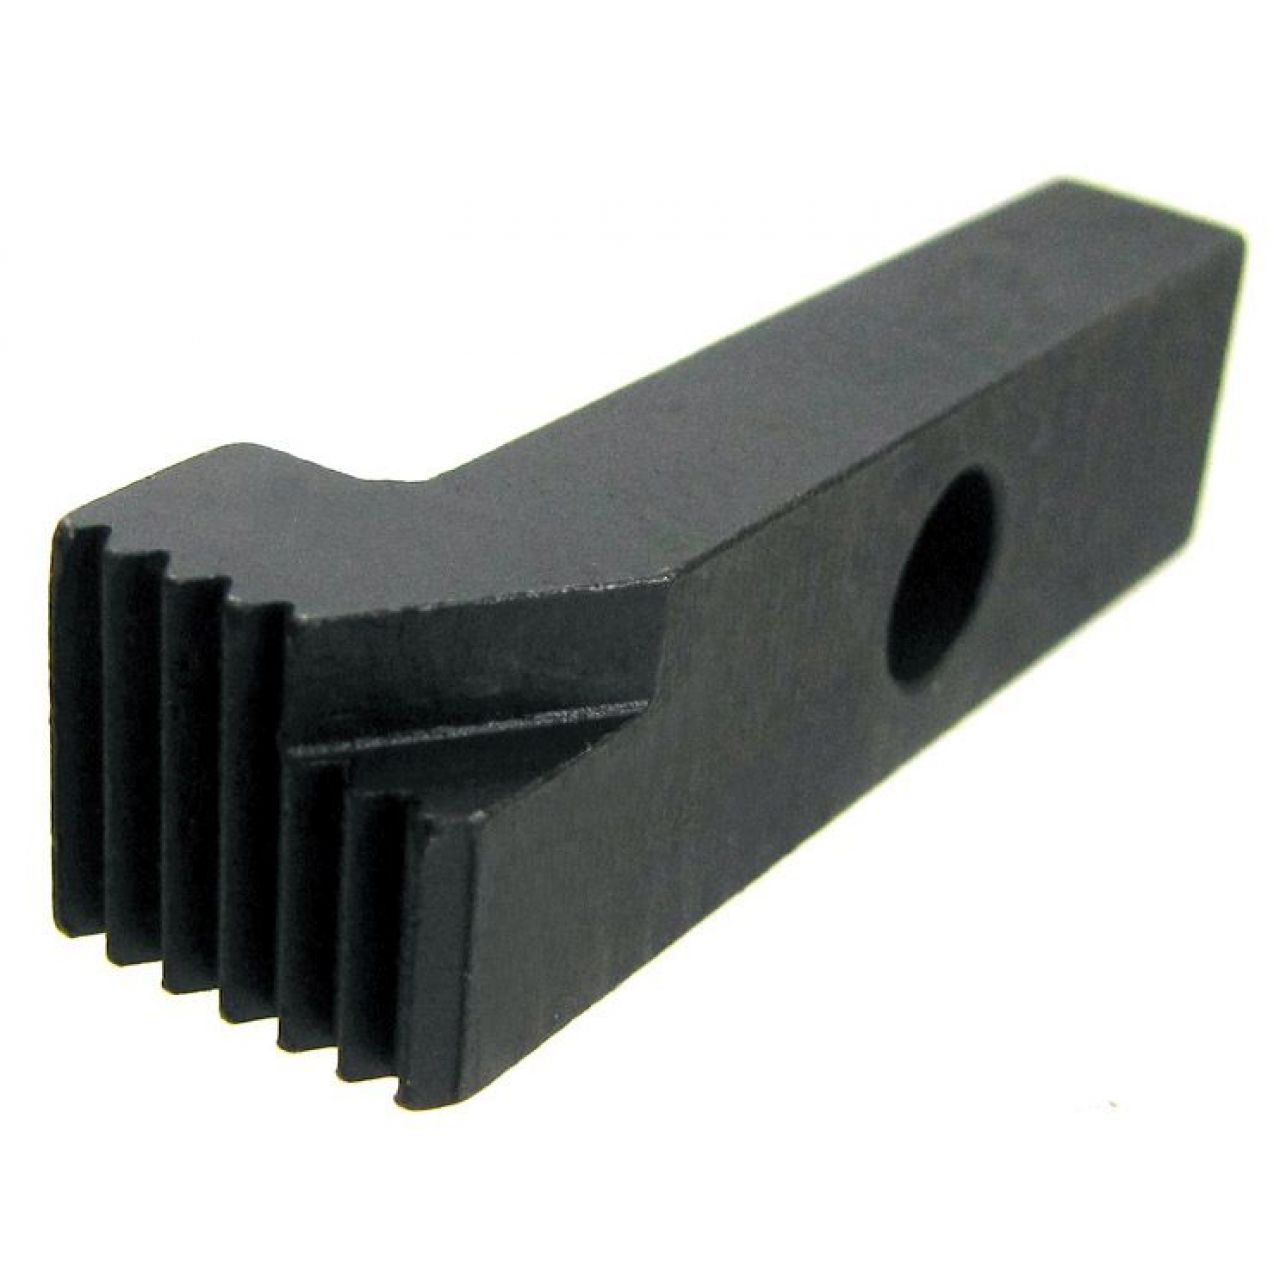 Cuchilla de varios dientes para el mecanizado con accesorio Keyway-skip, Paso 2 mm